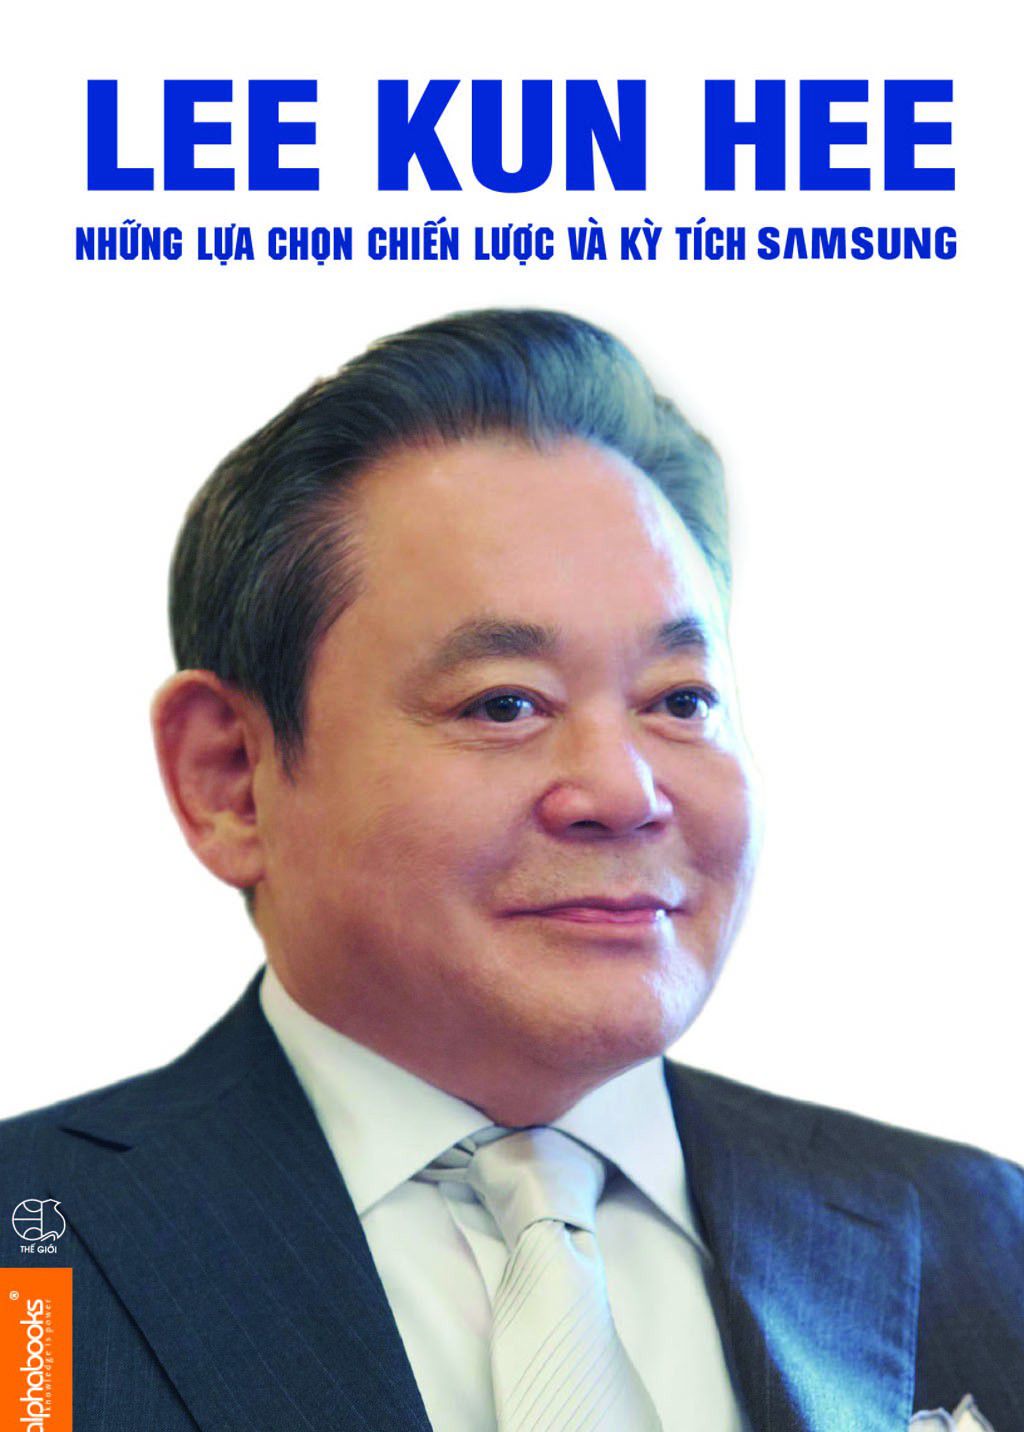 Lee Kun Hee – Những Lựa Chọn Chiến Lược Và Kỳ Tích Samsung